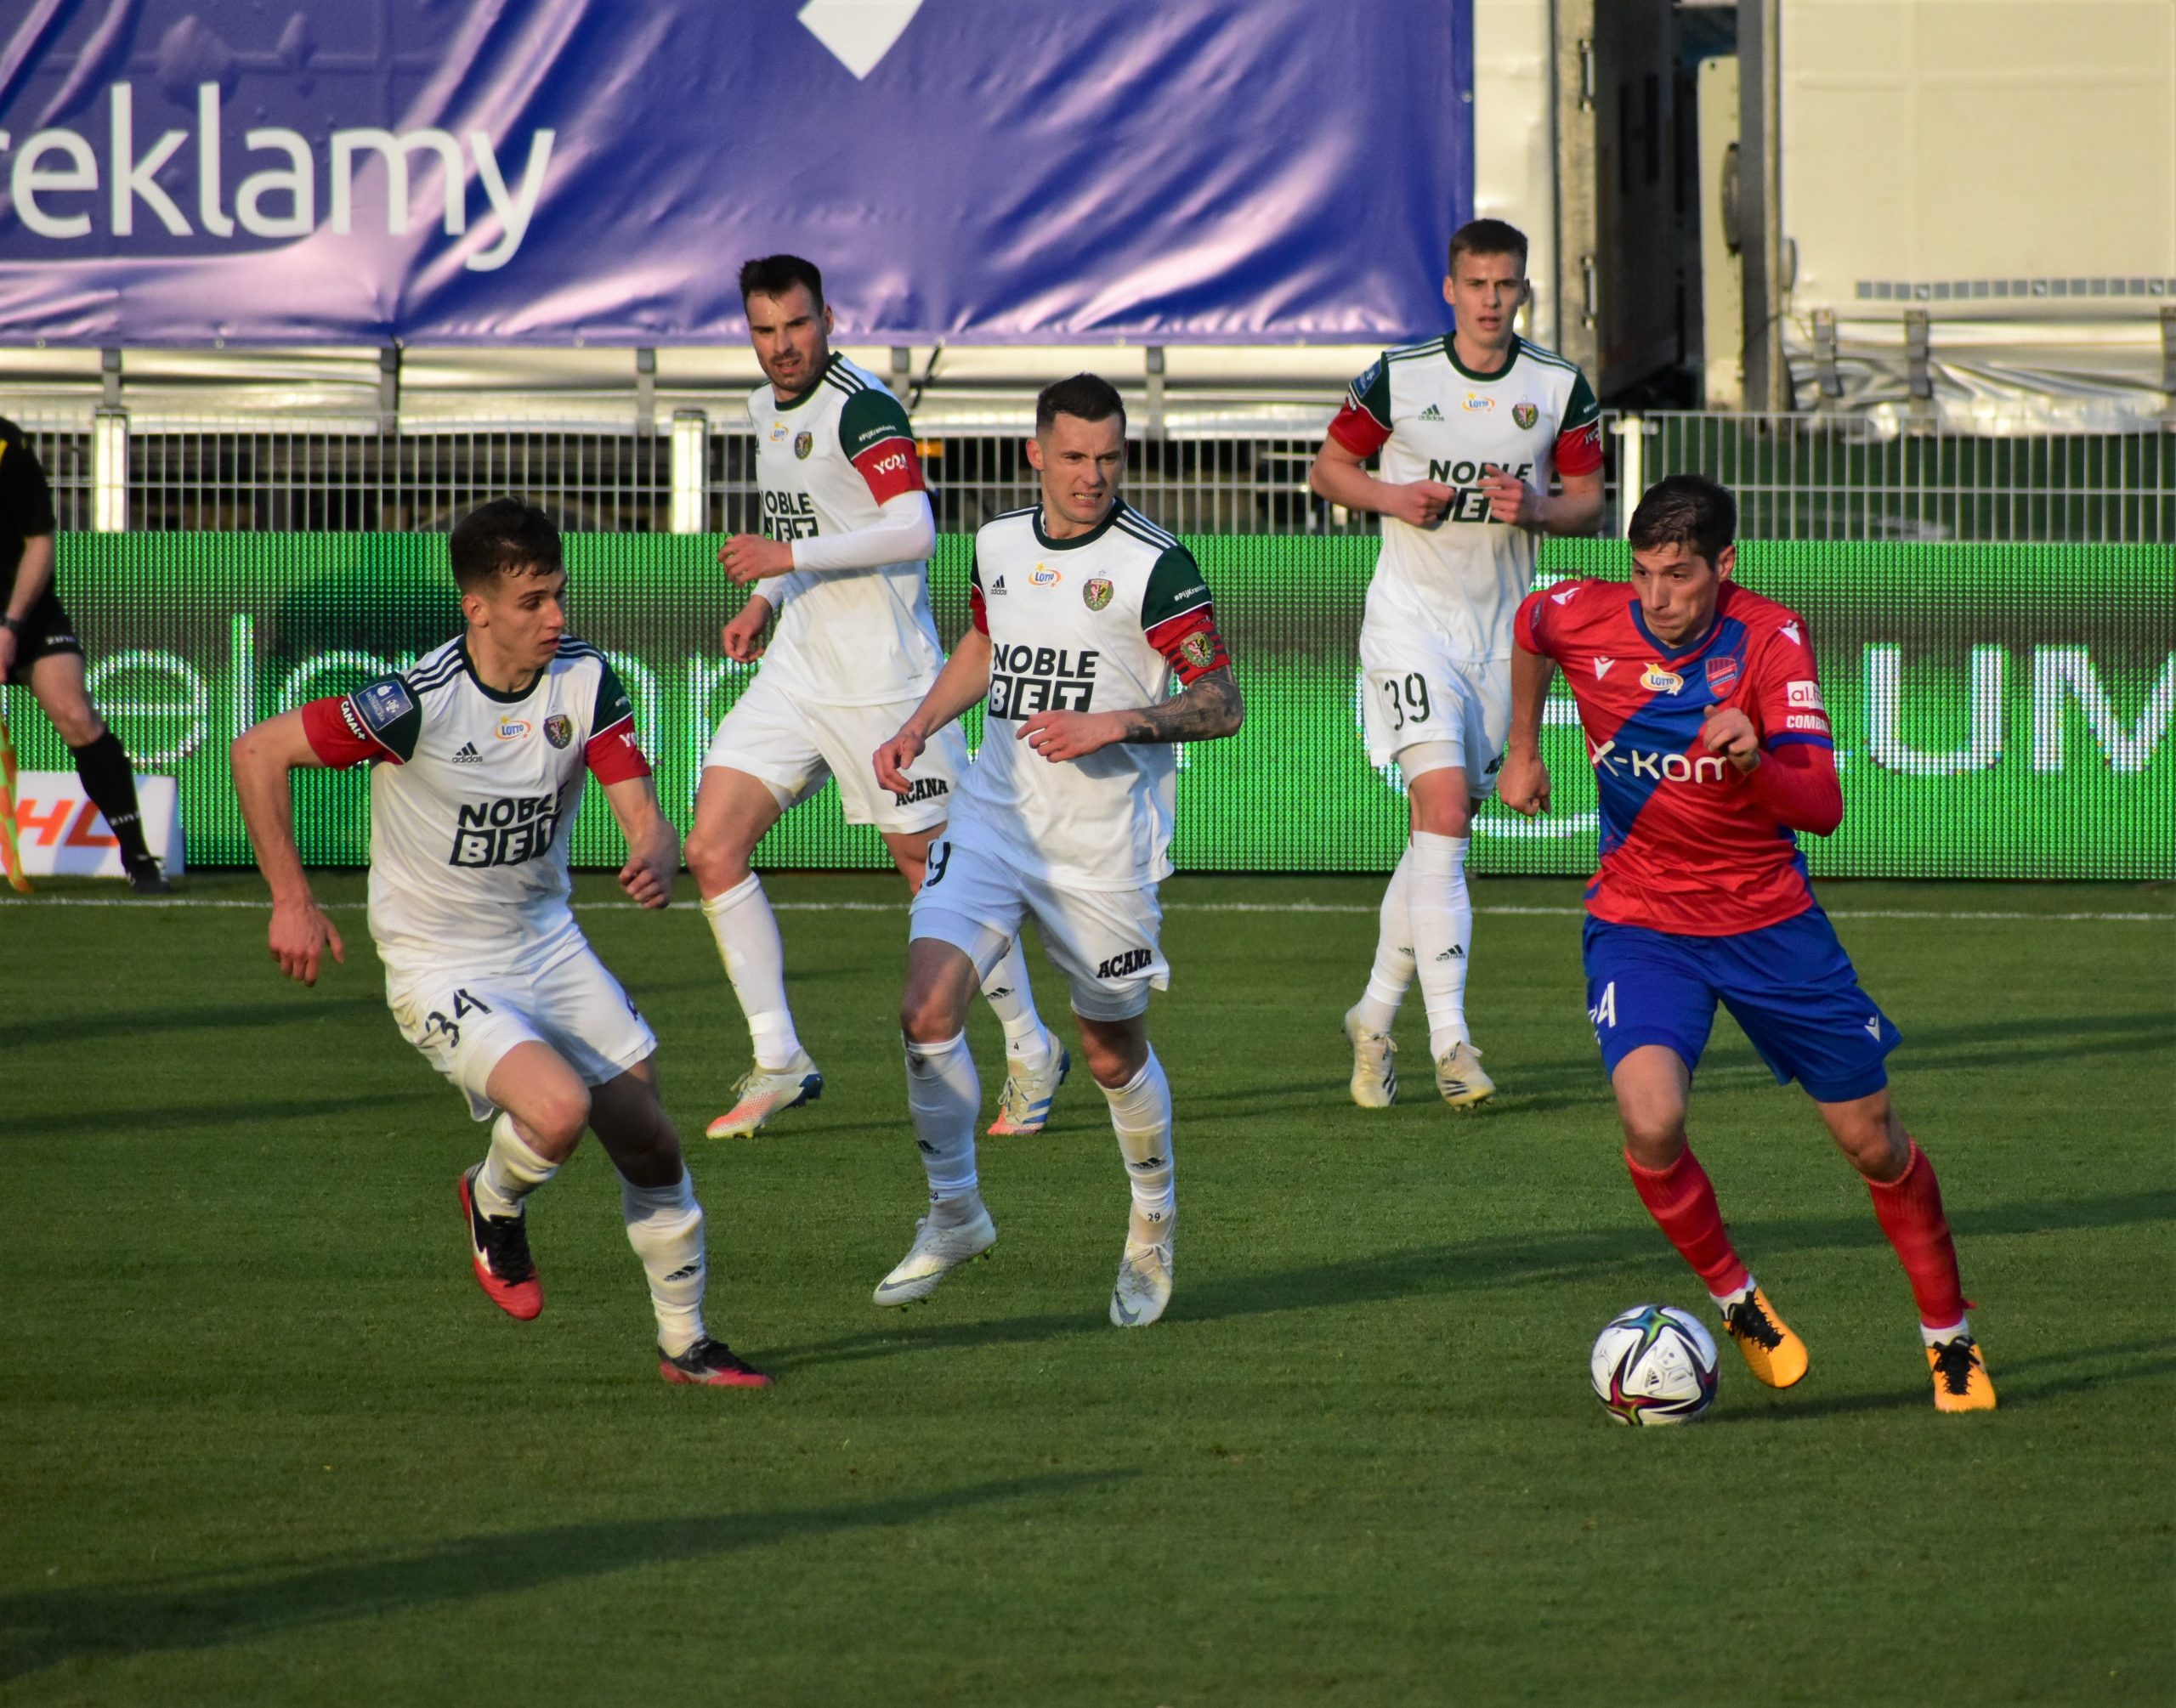 Zoran Arsenić podpisał kontrakt z Rakowem na 5 lat 1